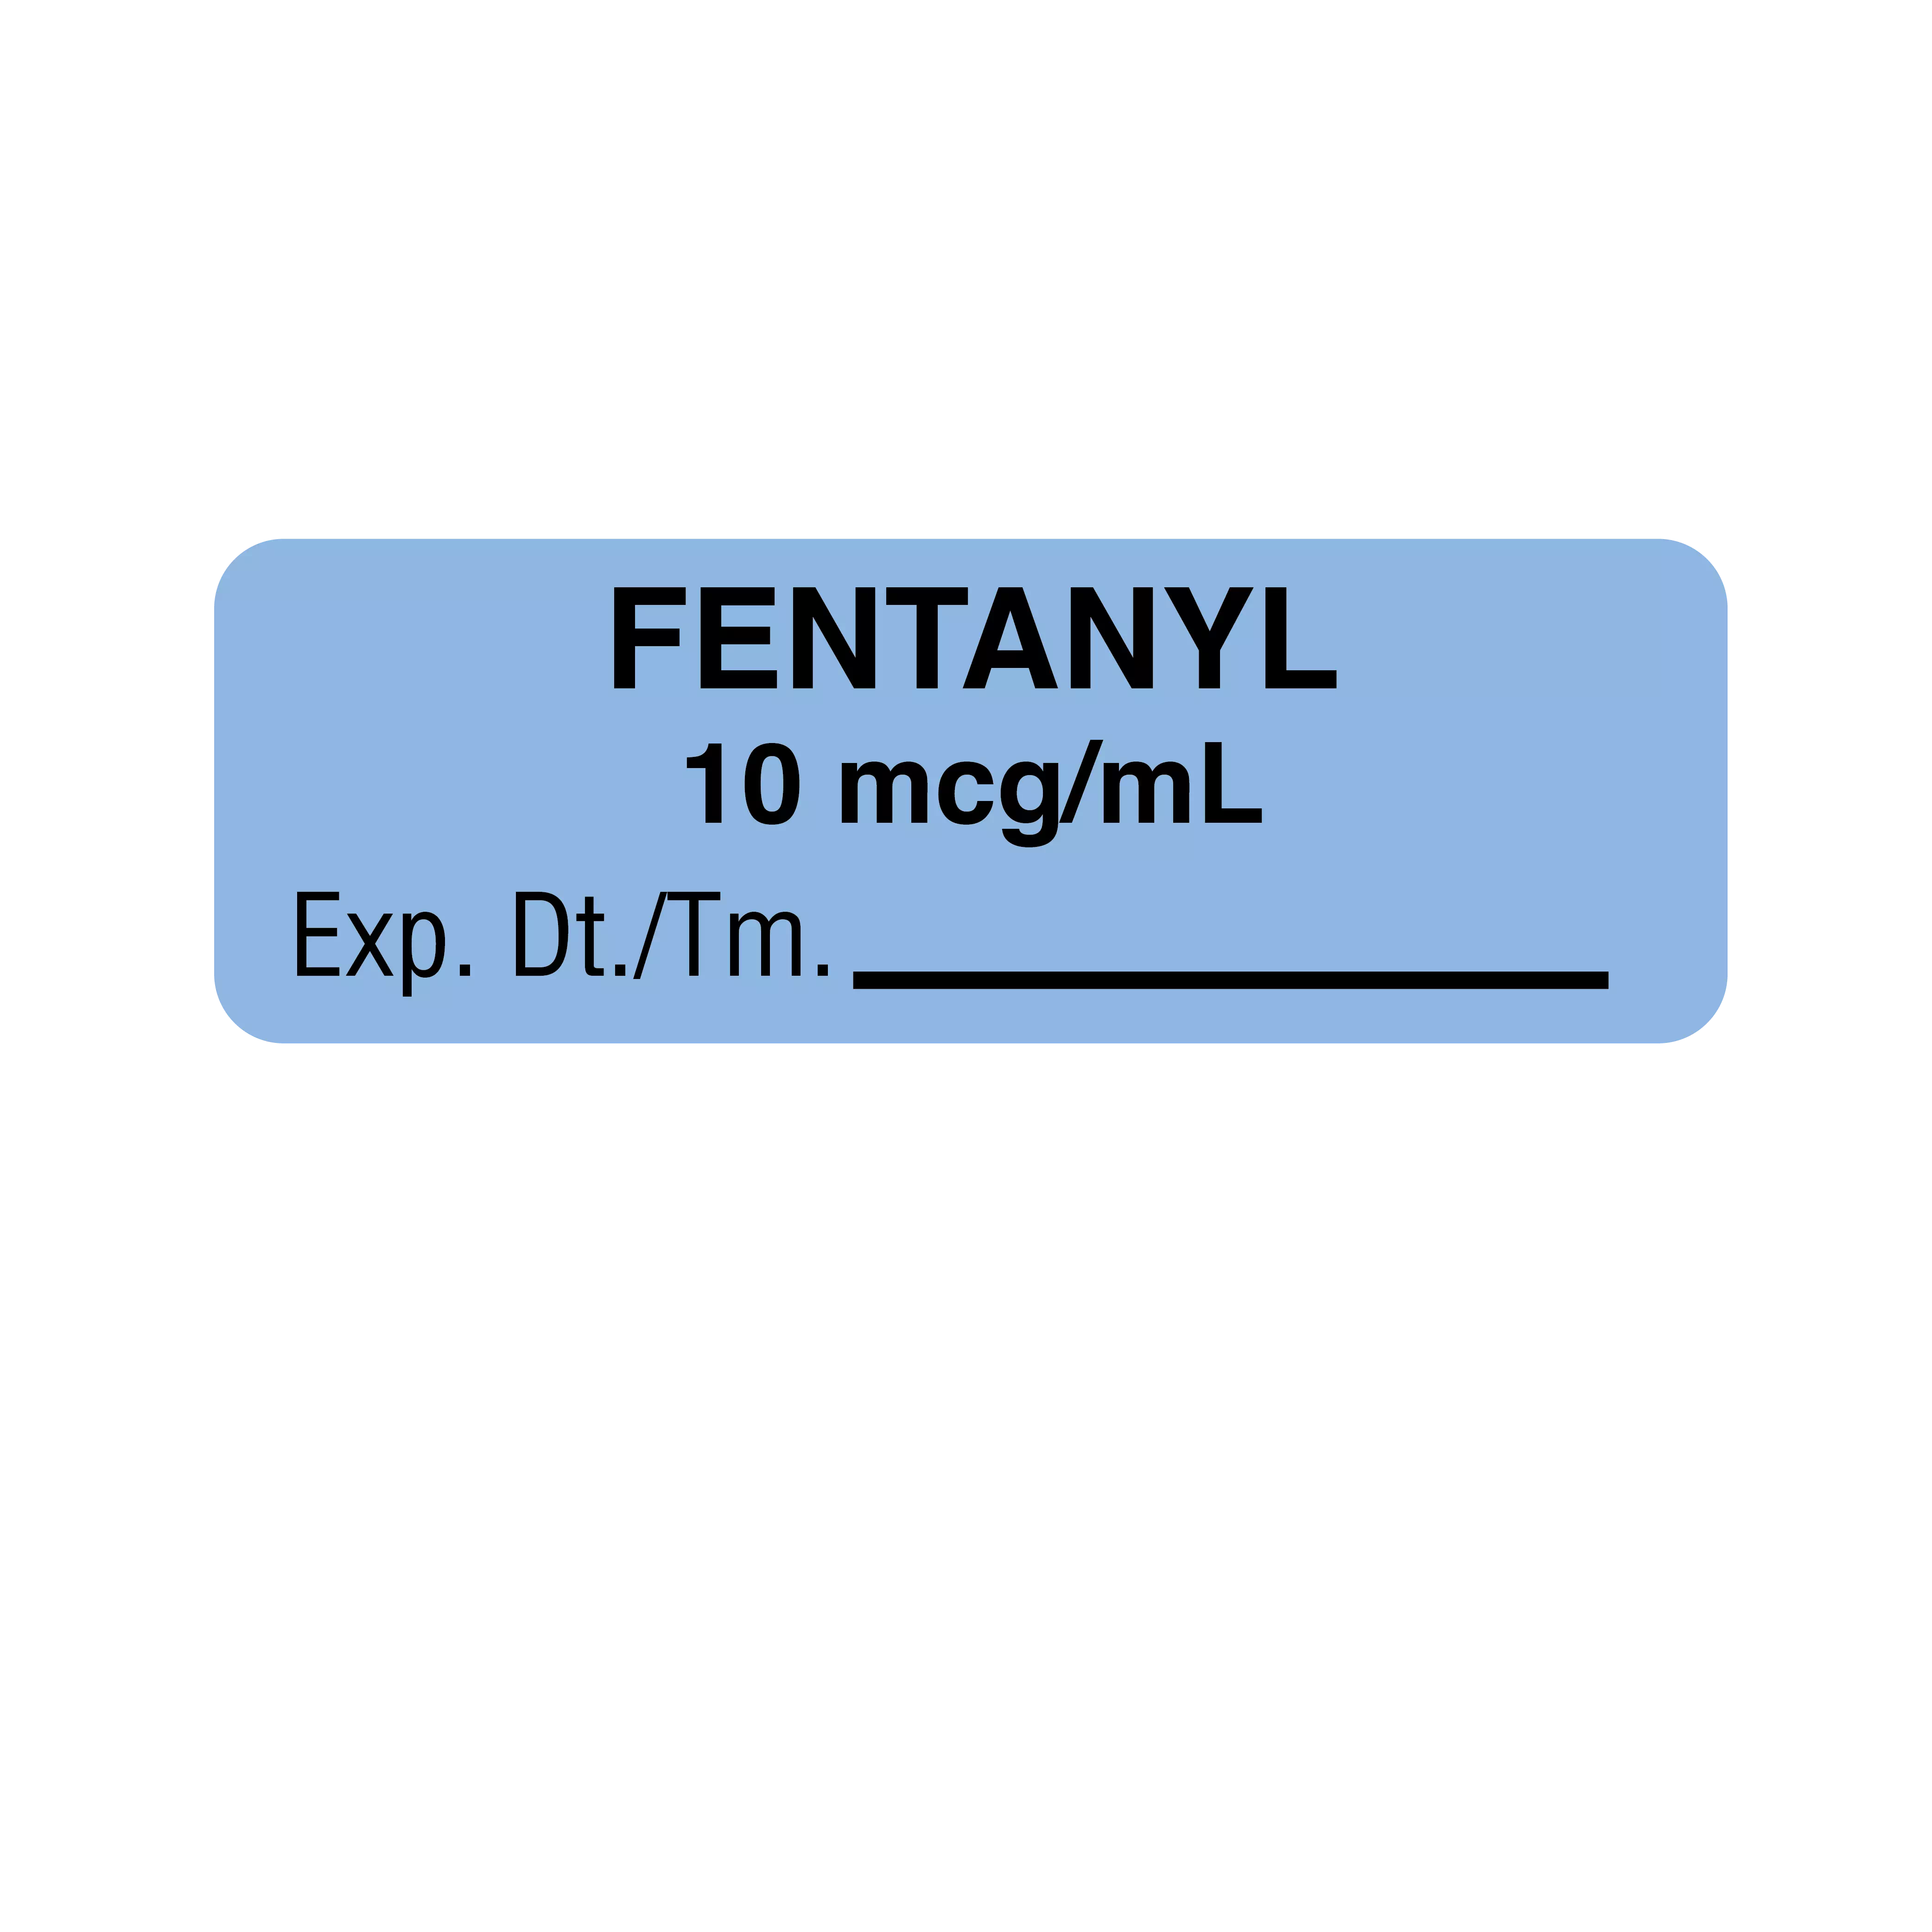 Fentanyl 10 mcg/mL